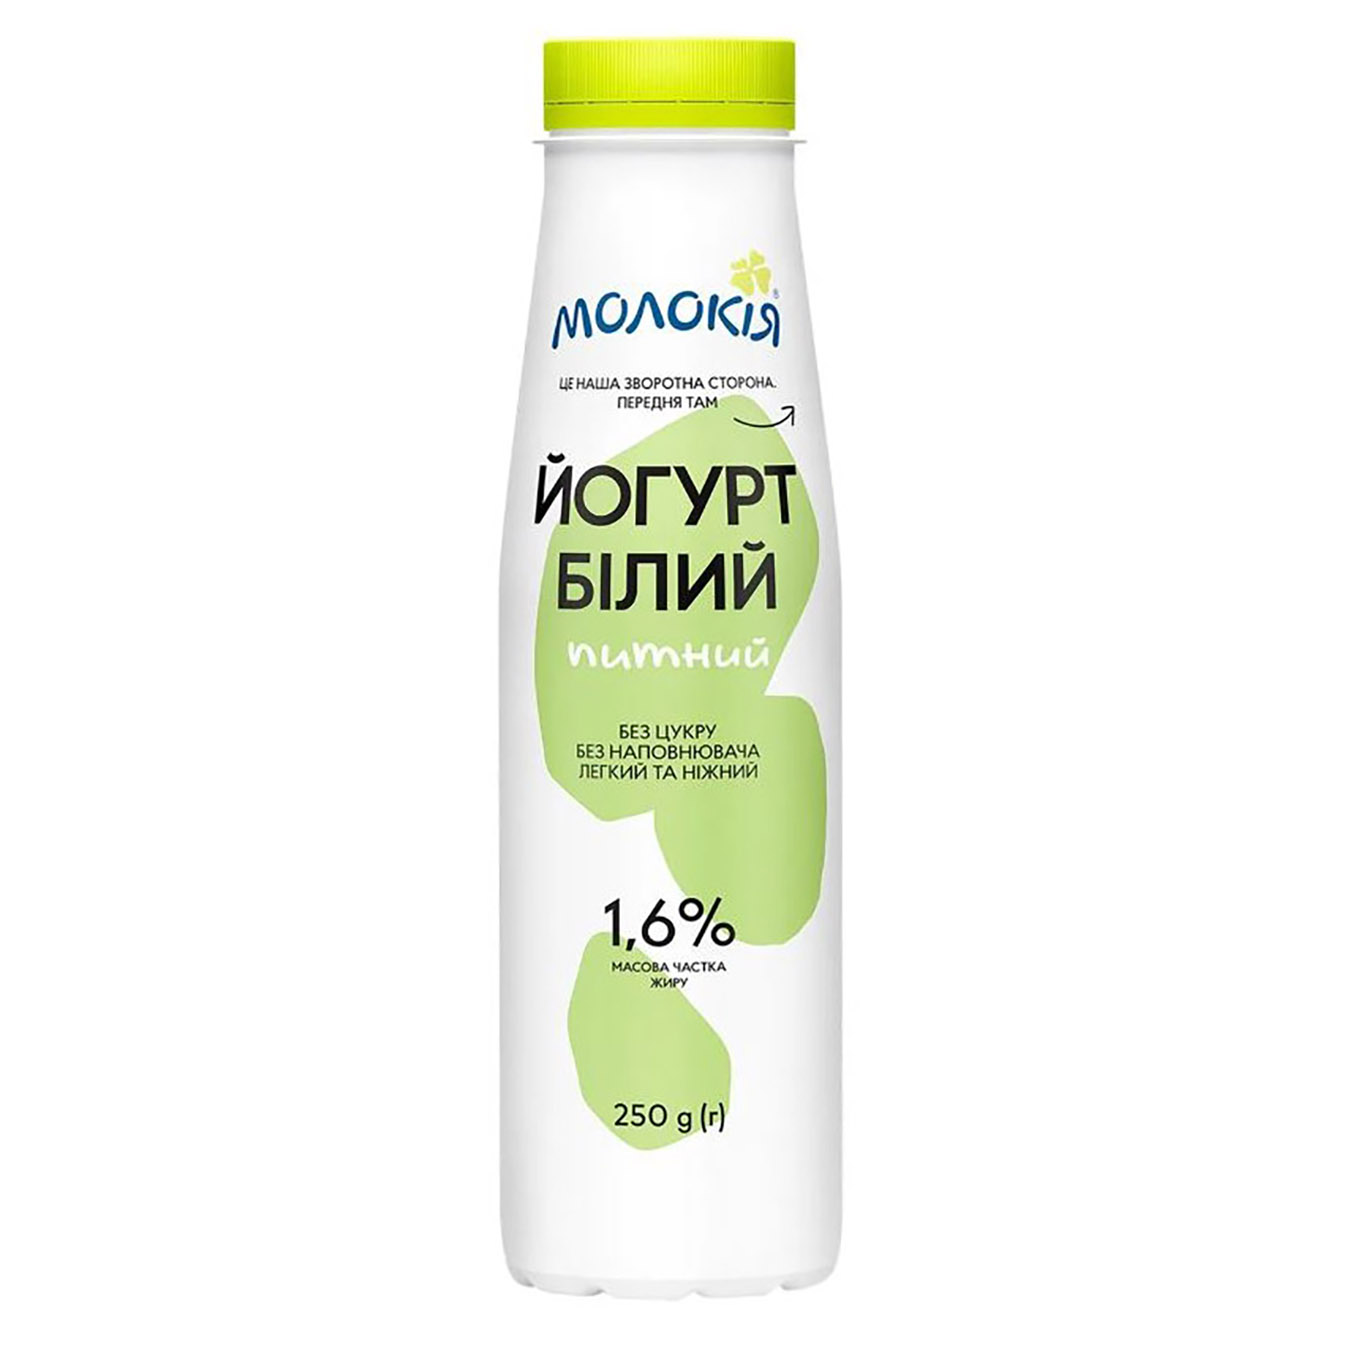 Yogurt Molokiya white bottle 1.6% 250g